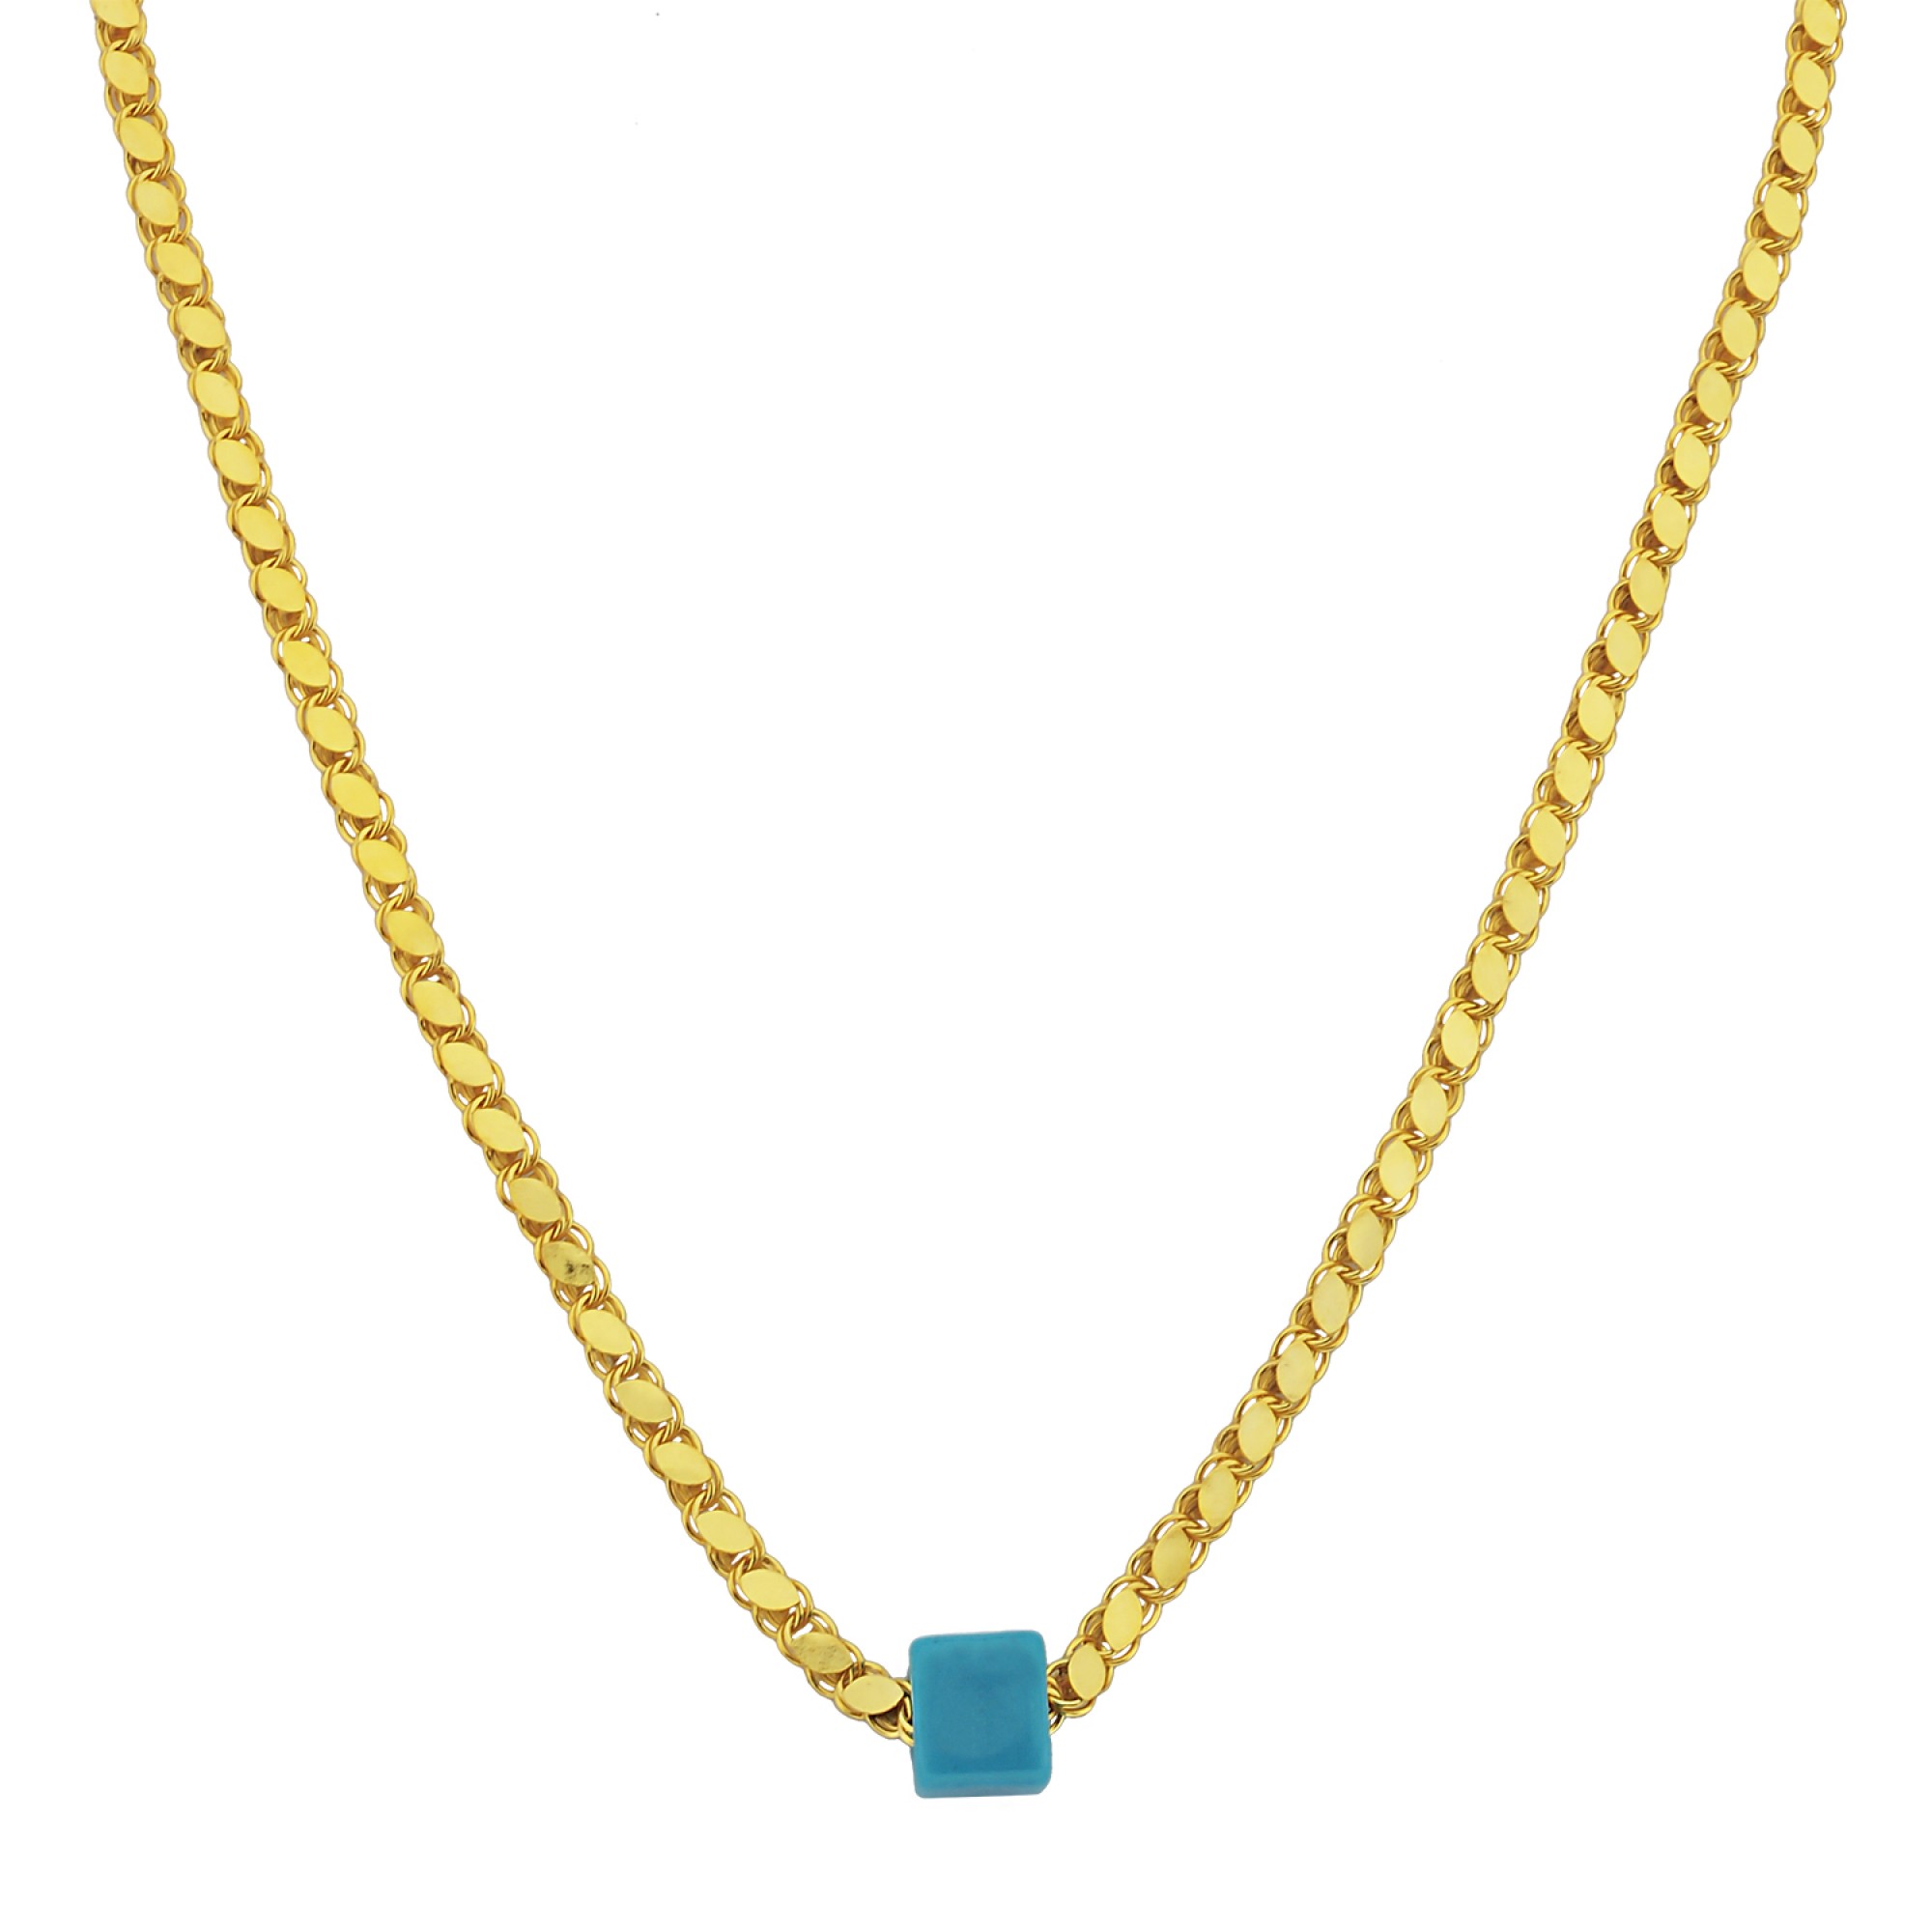 Silberkette 925 mit Blauen Stein Halskette mit Farbauswahl in Silber oder  Gold - FashionJuwelier